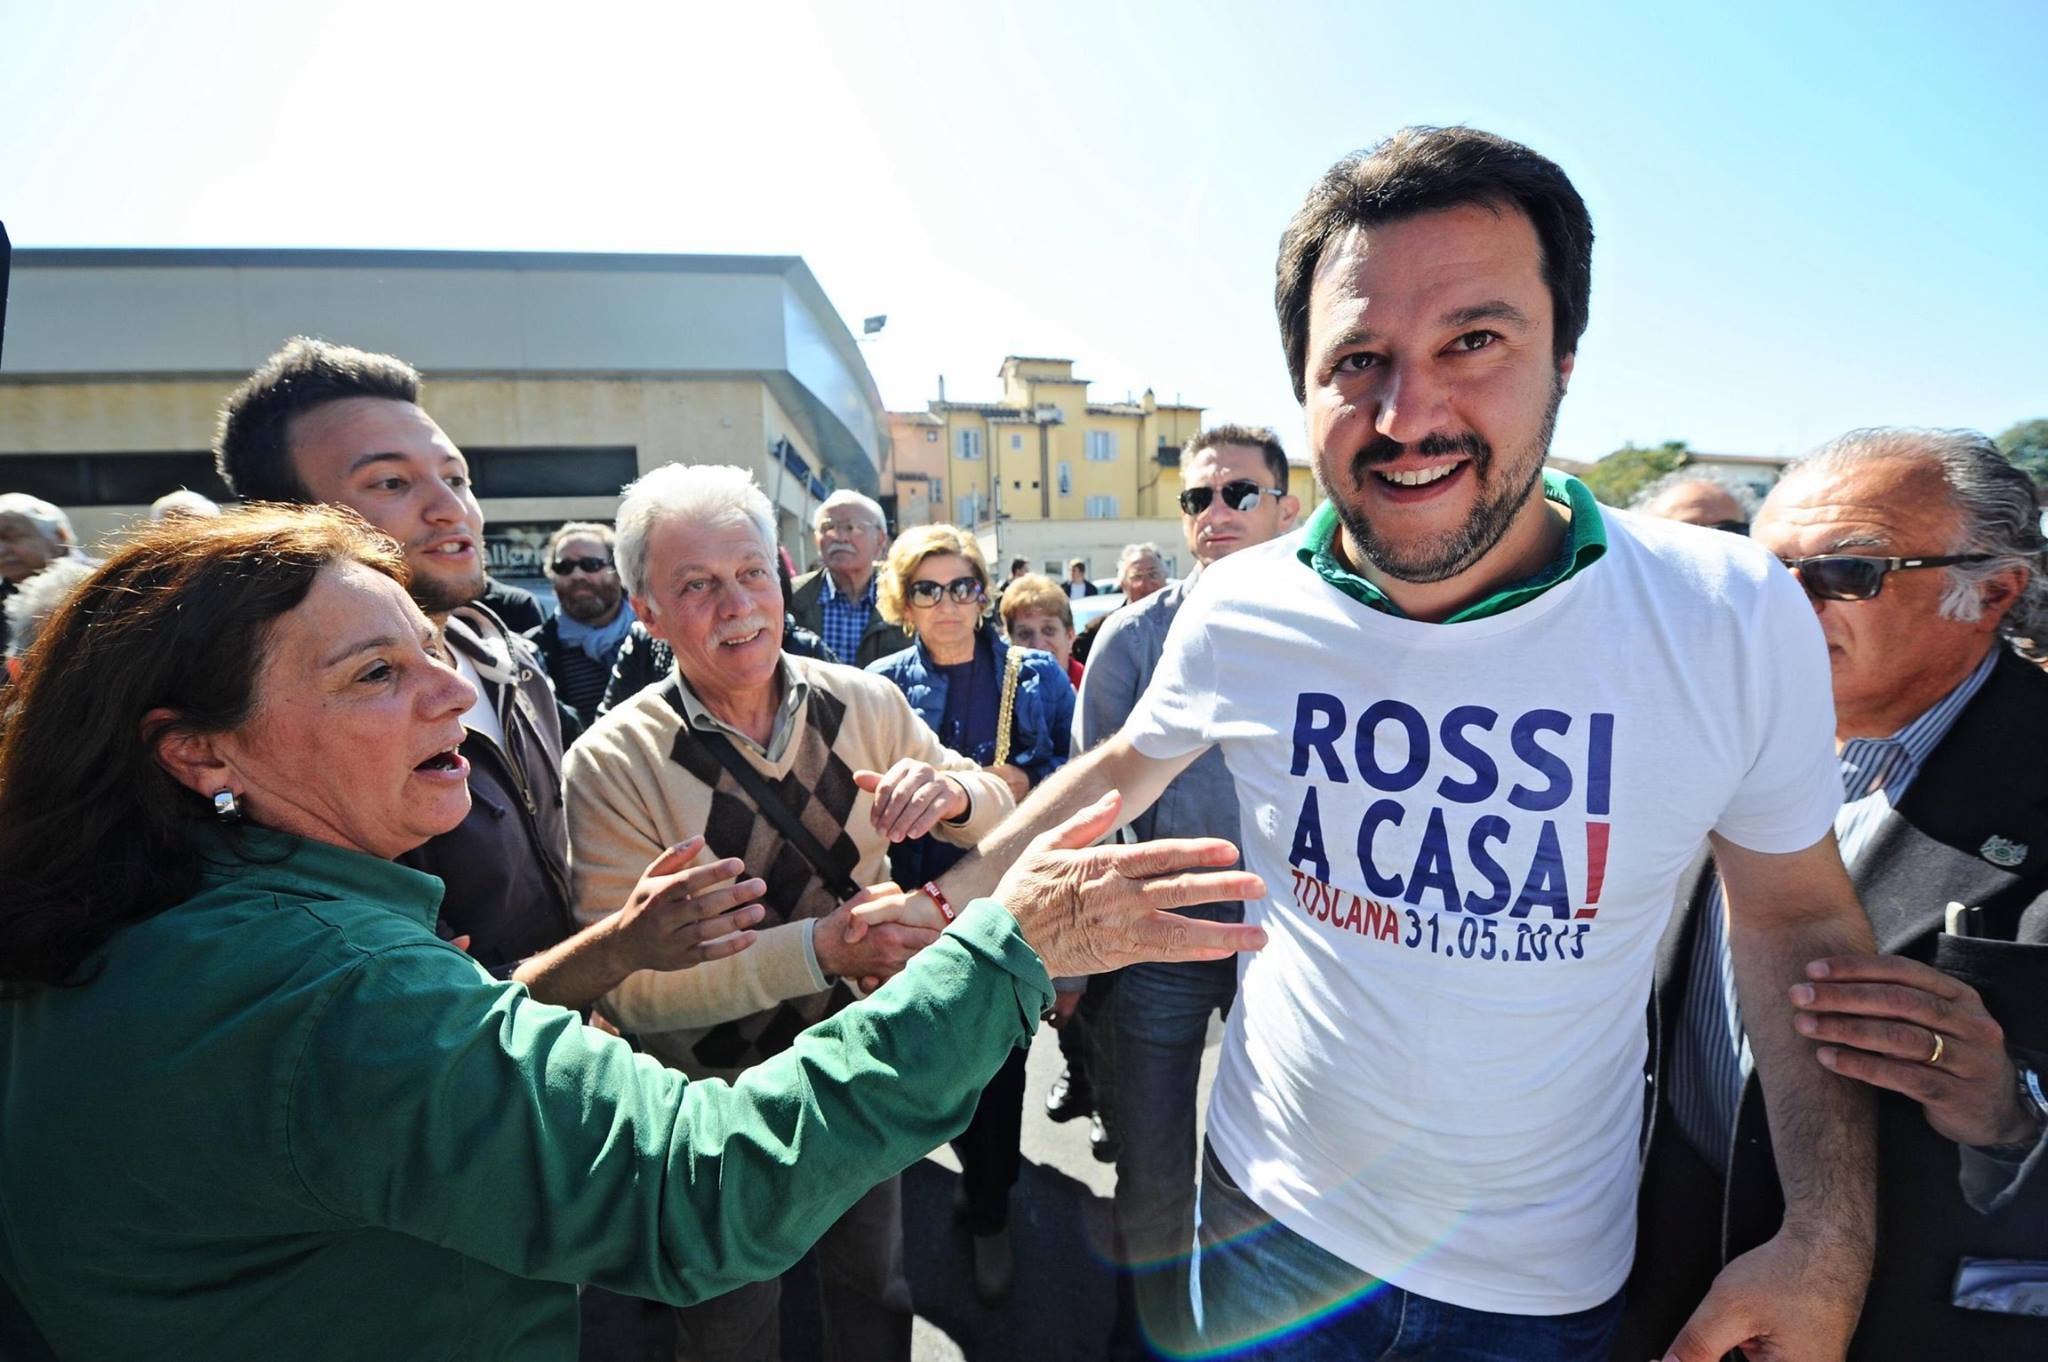 FIRENZE, 28 APR – Istigazione all’odio, minacce, ingiurie ed anche occupazione abusiva di suolo pubblico: sono i reati che, secondo Nazione Rom, sarebbero stati commessi da Matteo Salvini in un […]